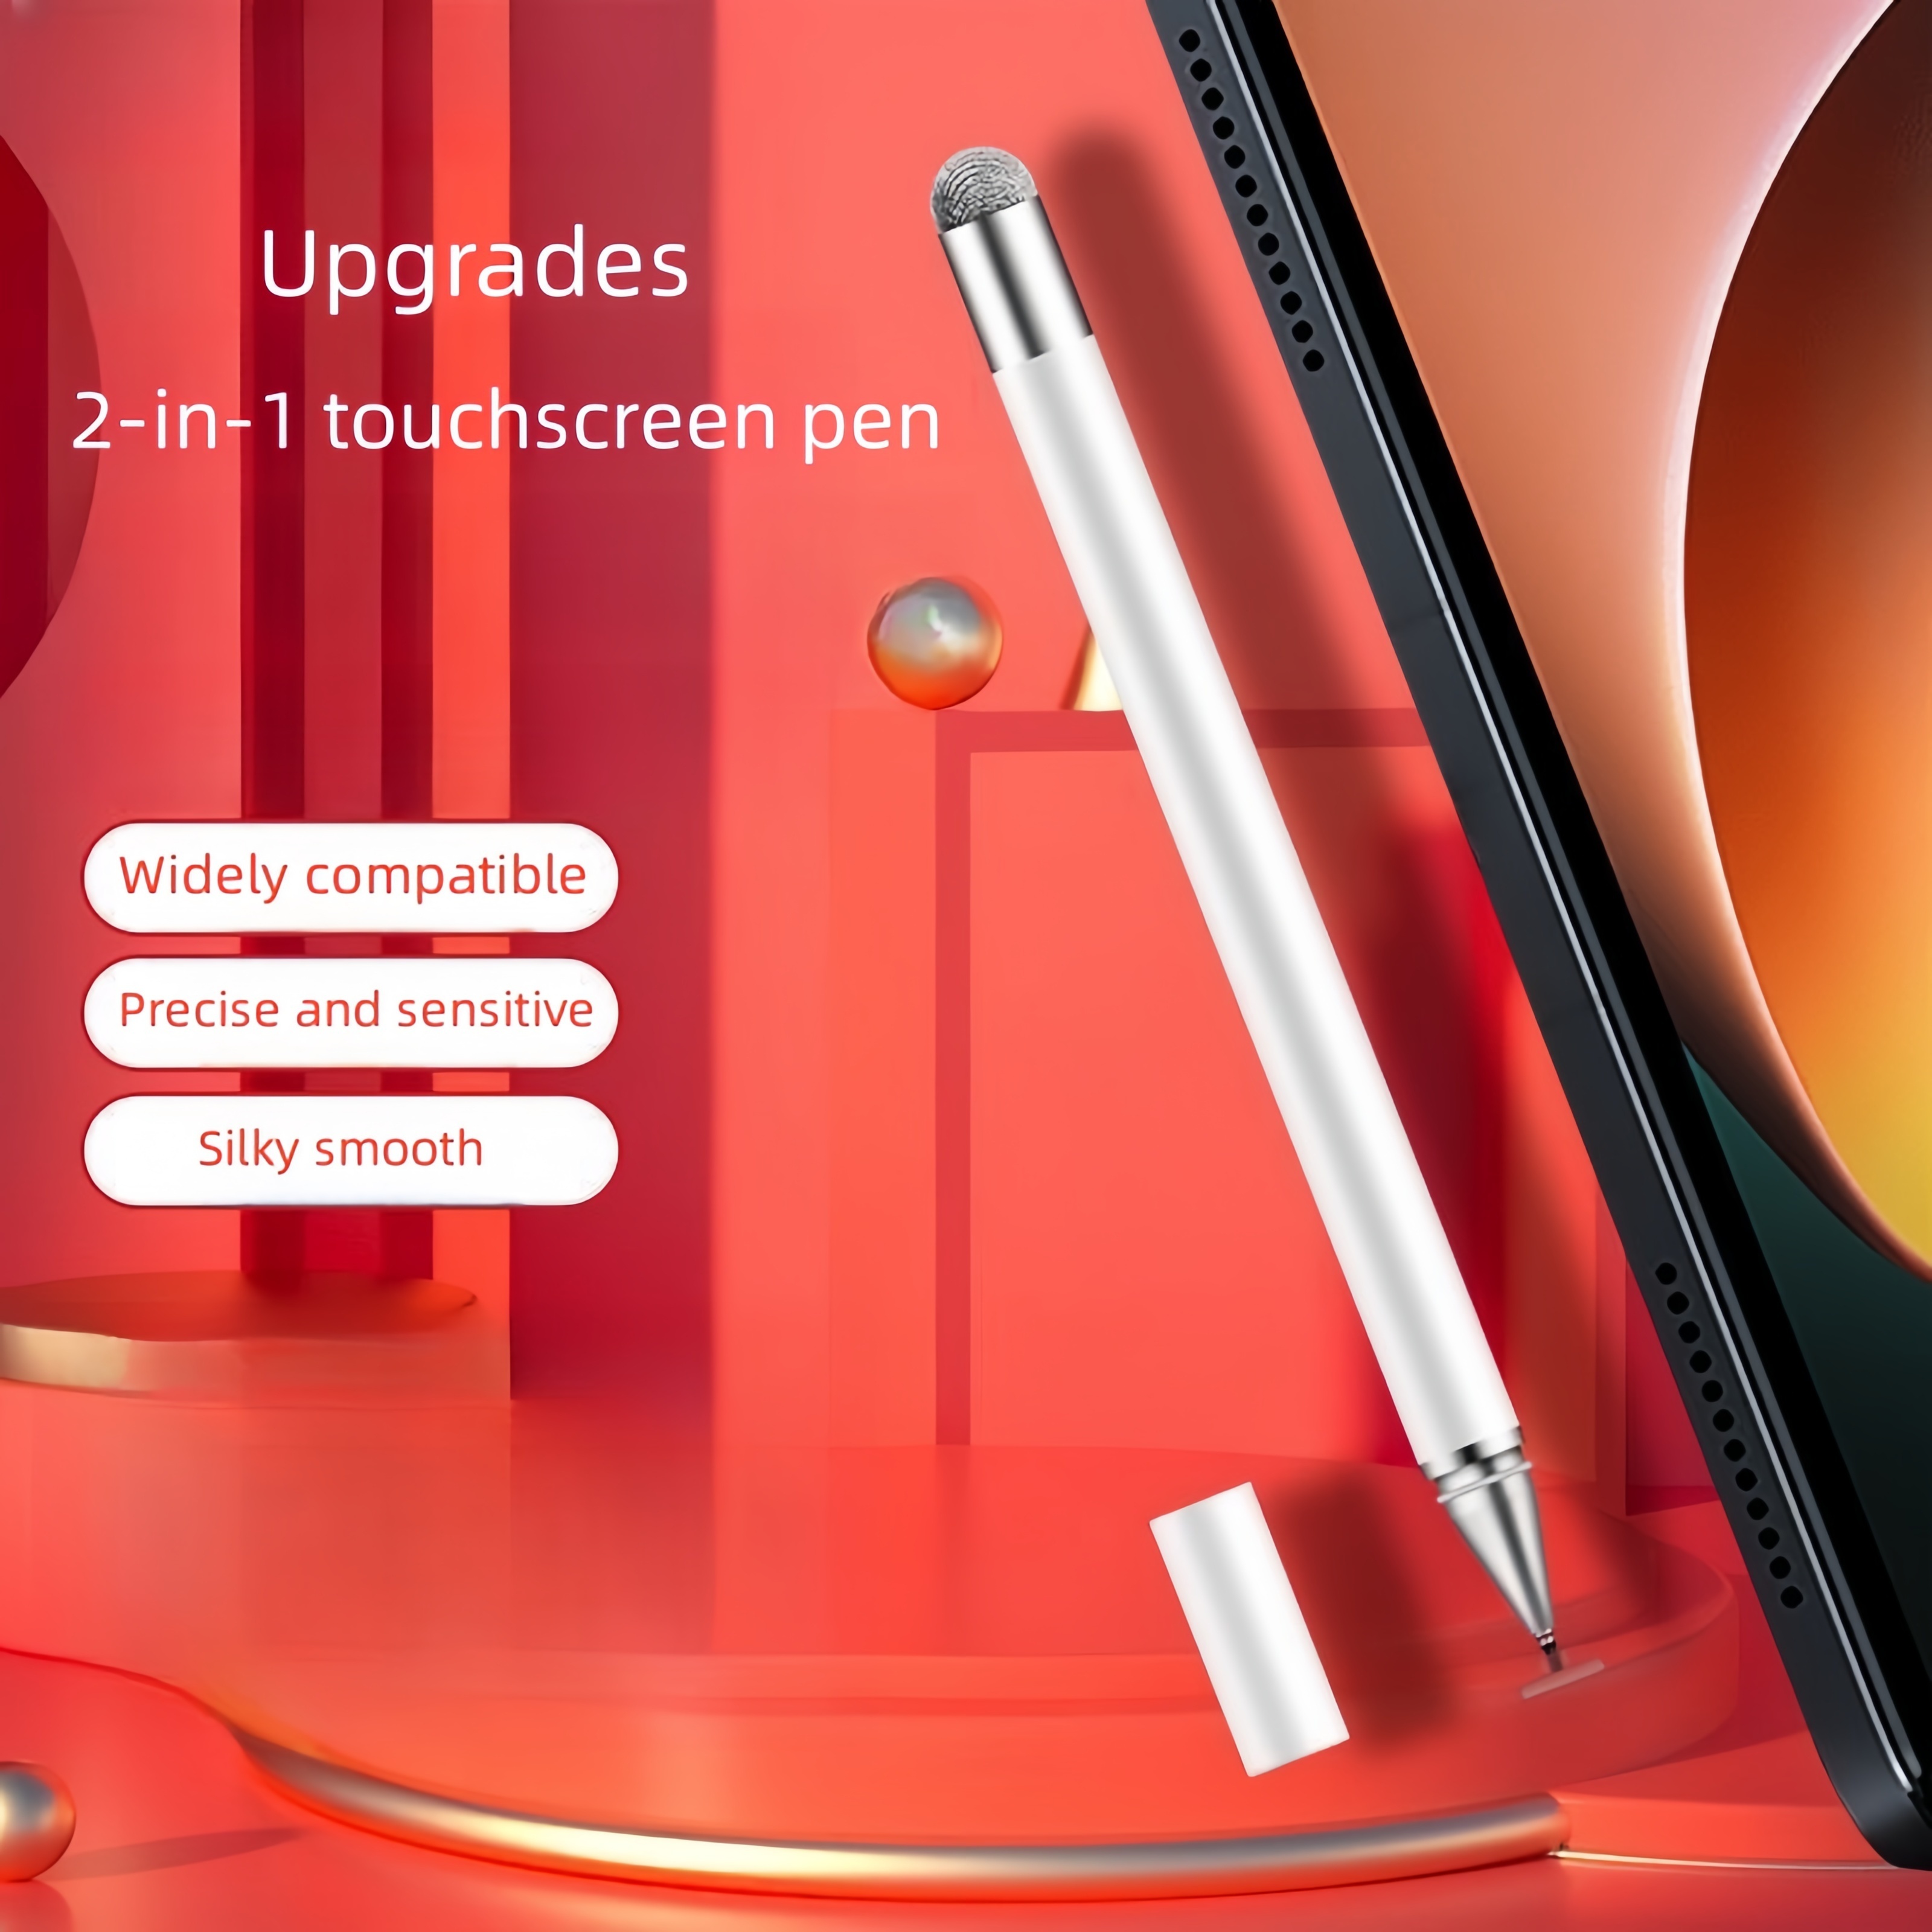 Lápiz capacitivo 2 en 1 para pantallas táctiles (paquete de 3 unidades,  azul/rosa/morado) de alta precisión 2 en 1 para  iPad/iPhone/Samsung/Android